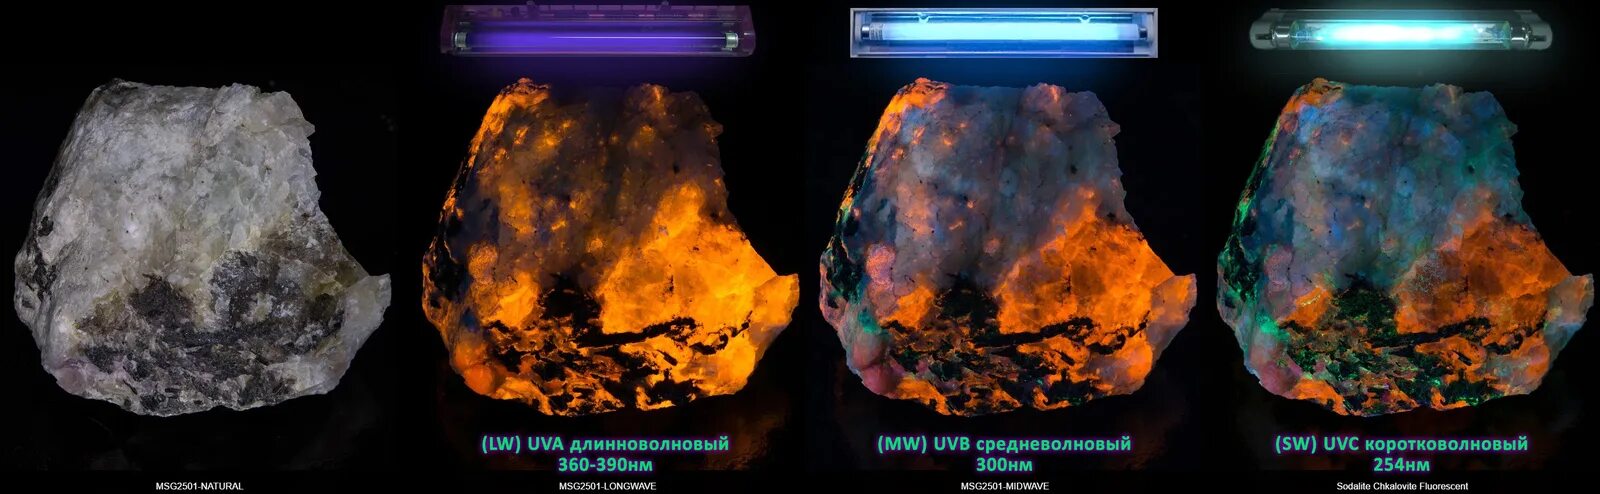 Люминесценция минералов в ультрафиолетовом излучении. Флуоресценция минералов в ультрафиолете. Свечение минералов в ультрафиолете. Термолюминесценция минералов. Называют обладают флюоресцируют